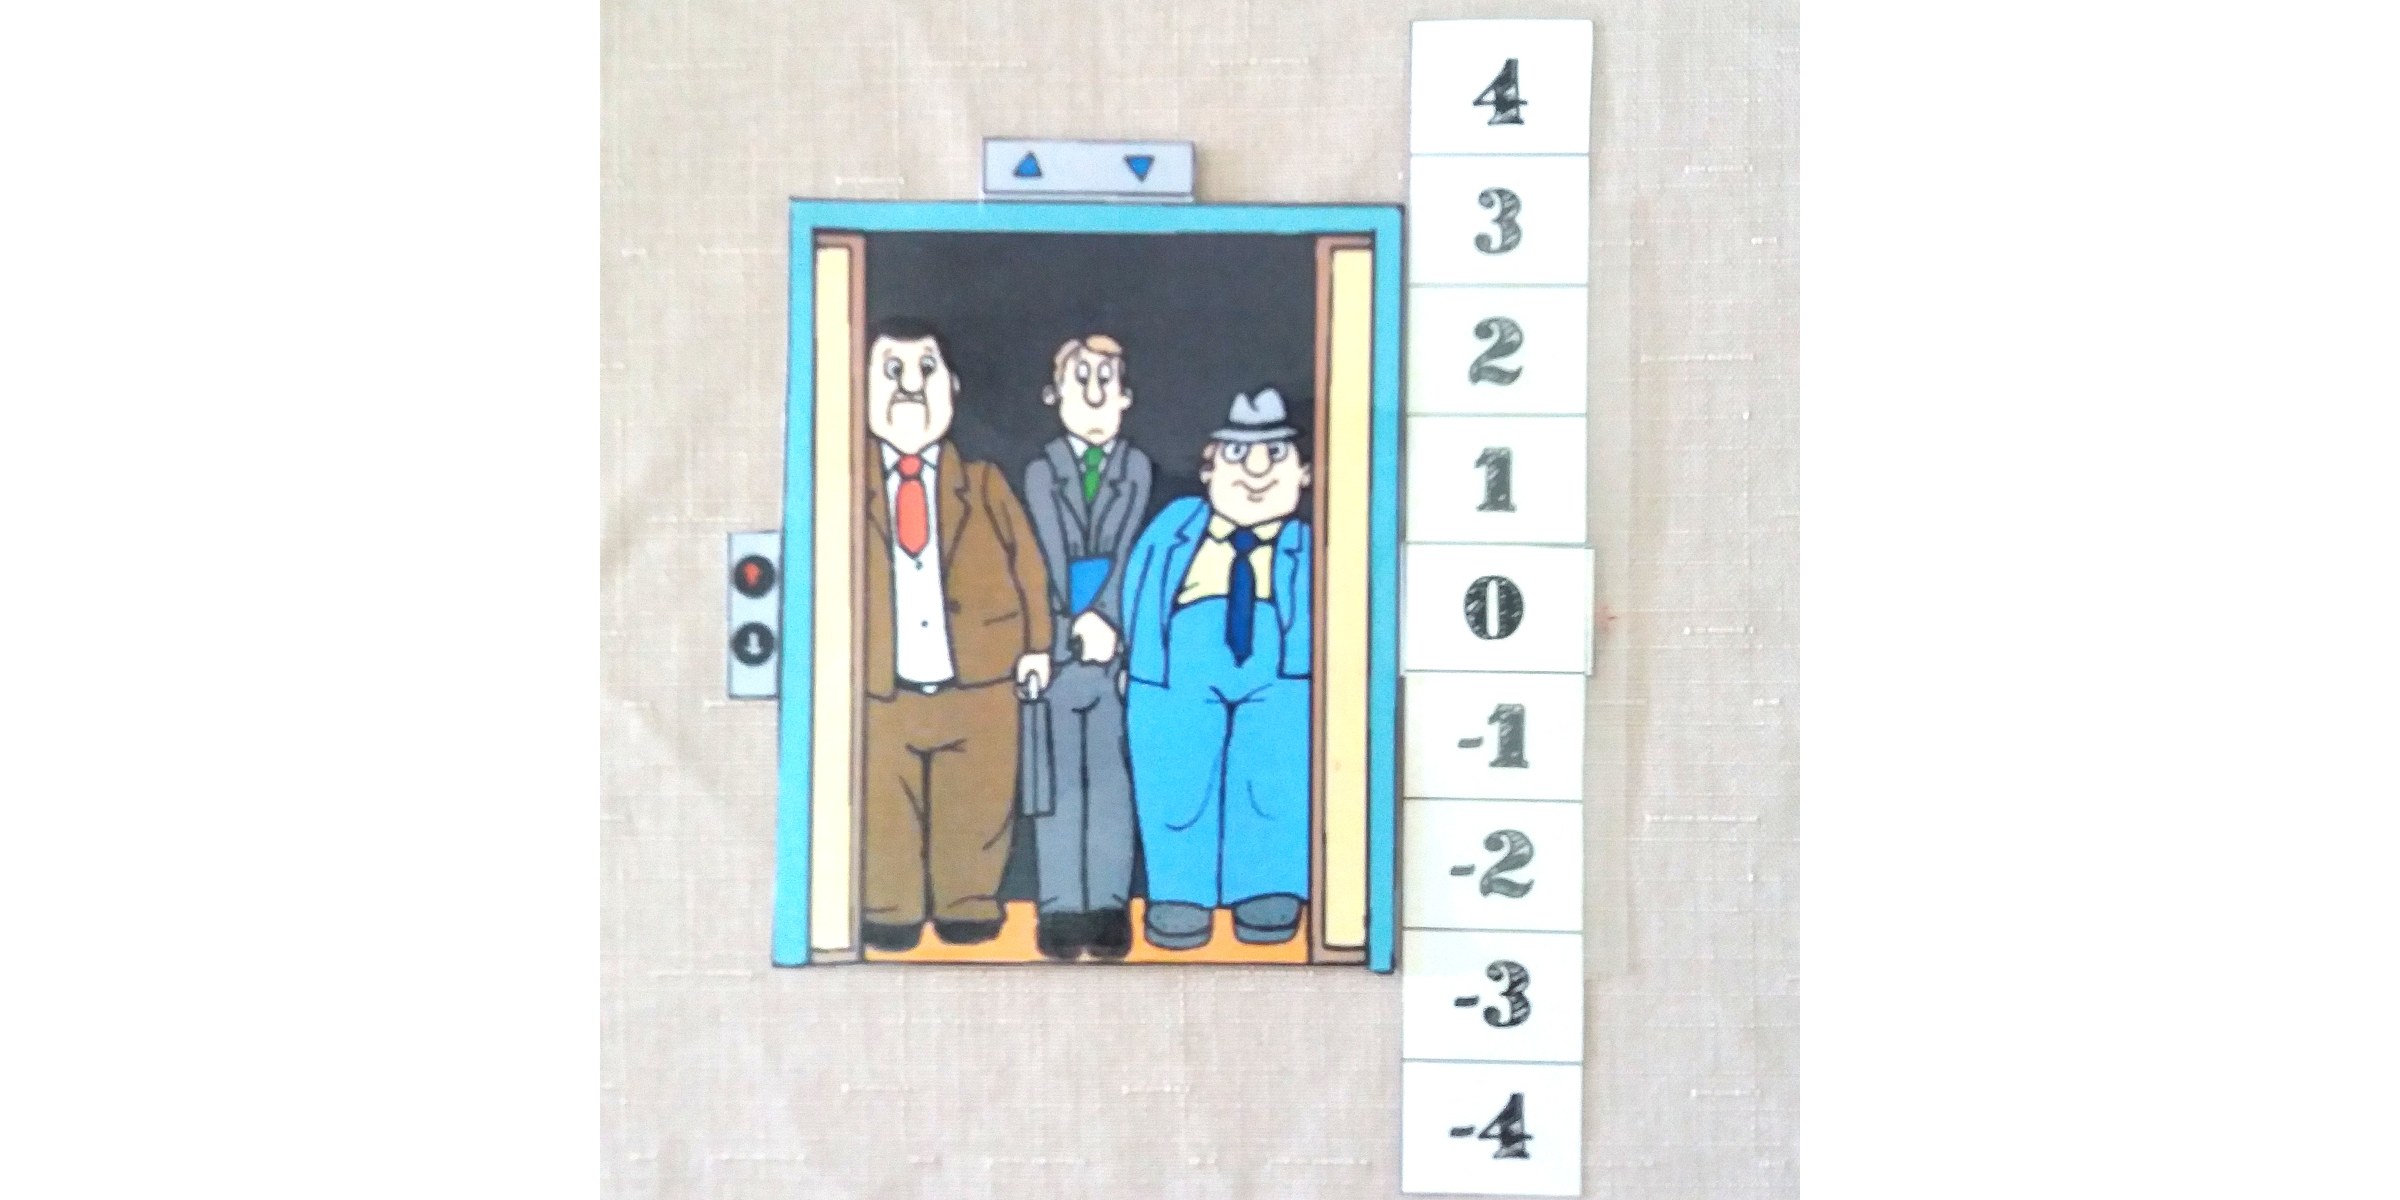 Integers - negative number - elevator